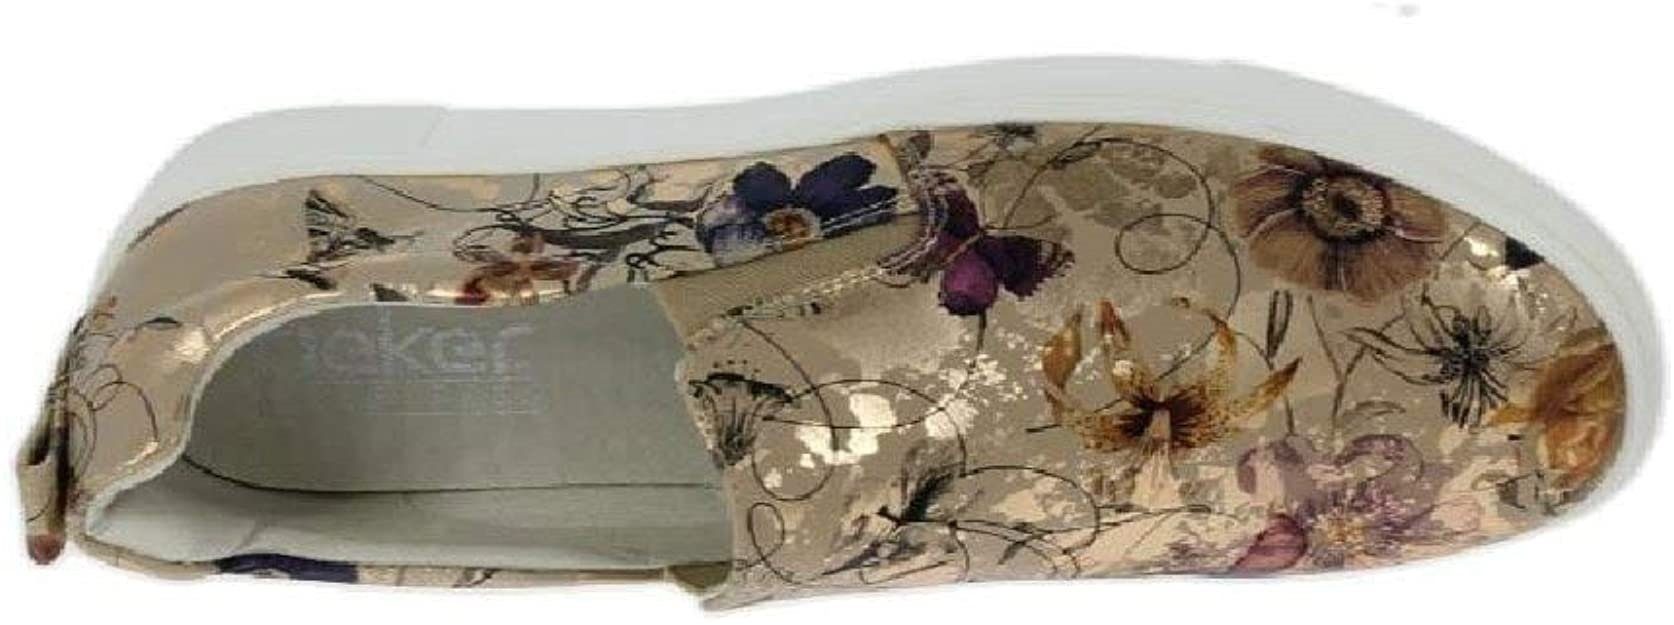 N9160-90 mit Rieker Slipper tollem Blütenprint,